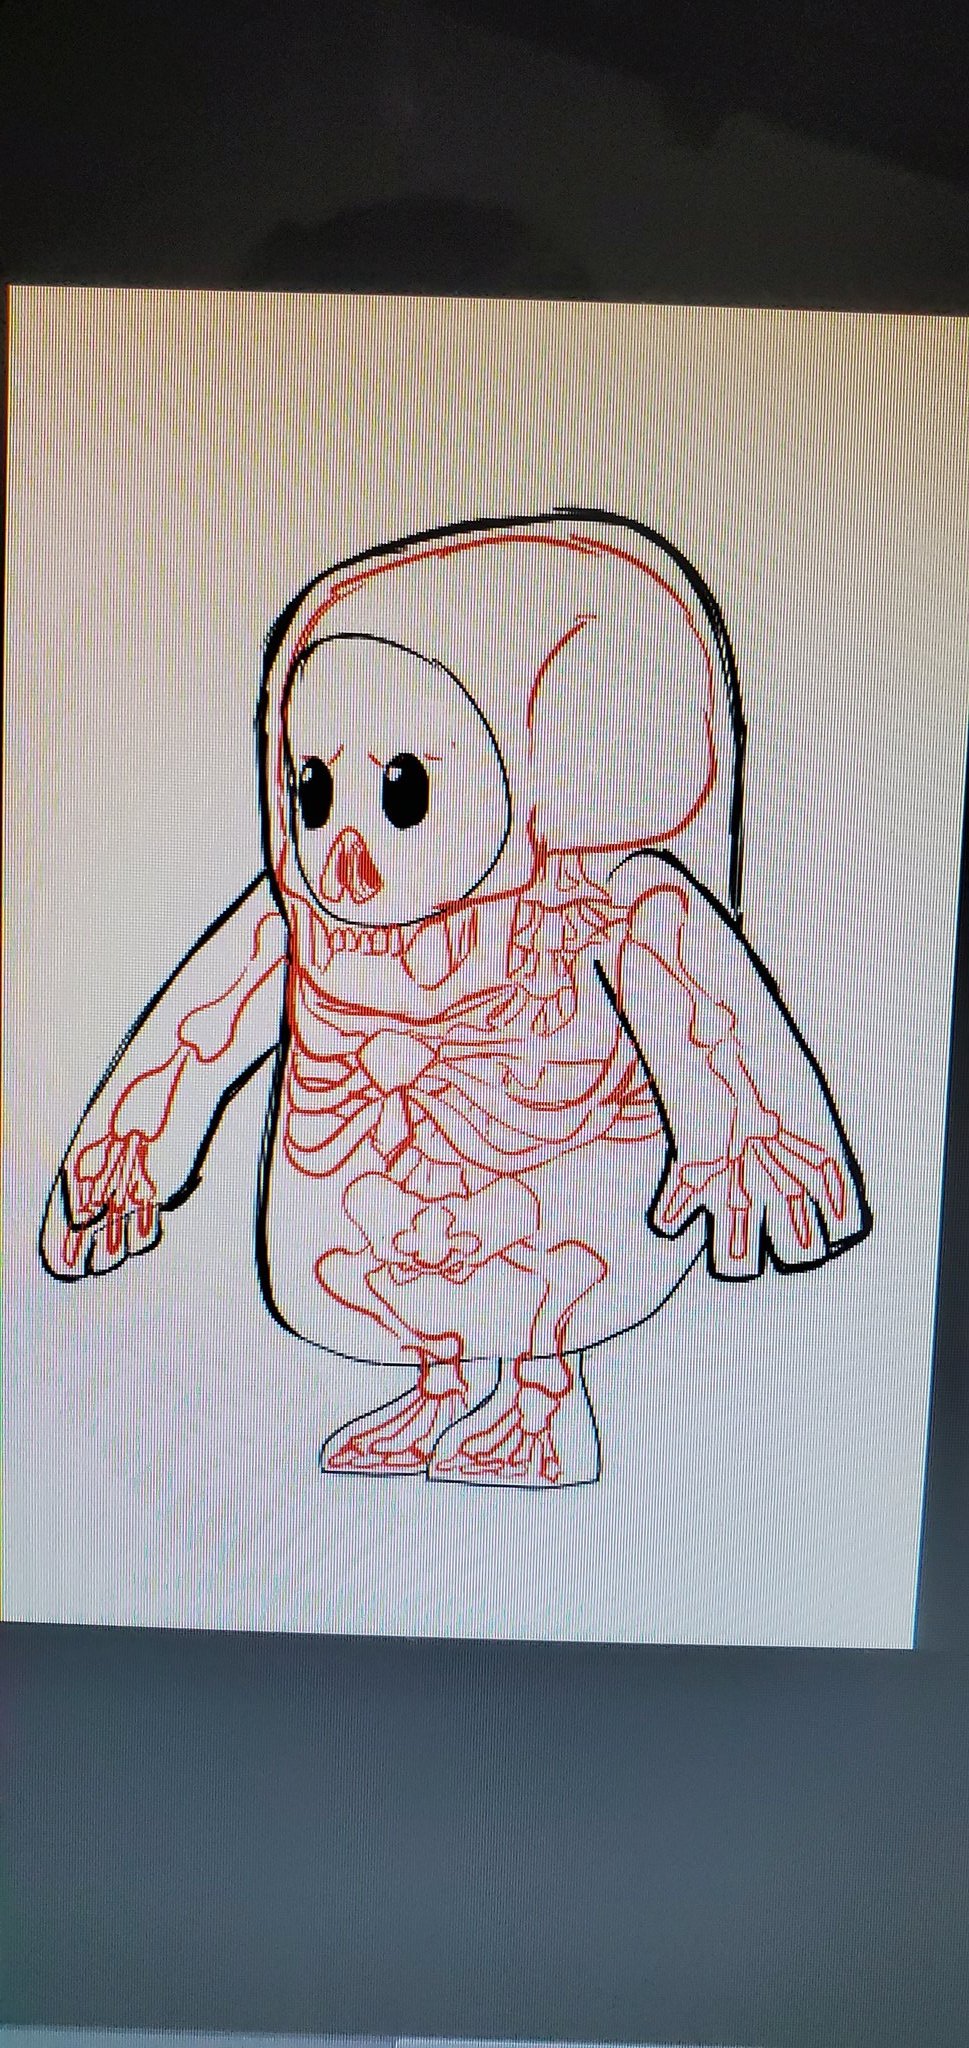 fall guys anatomy drawing skeleton